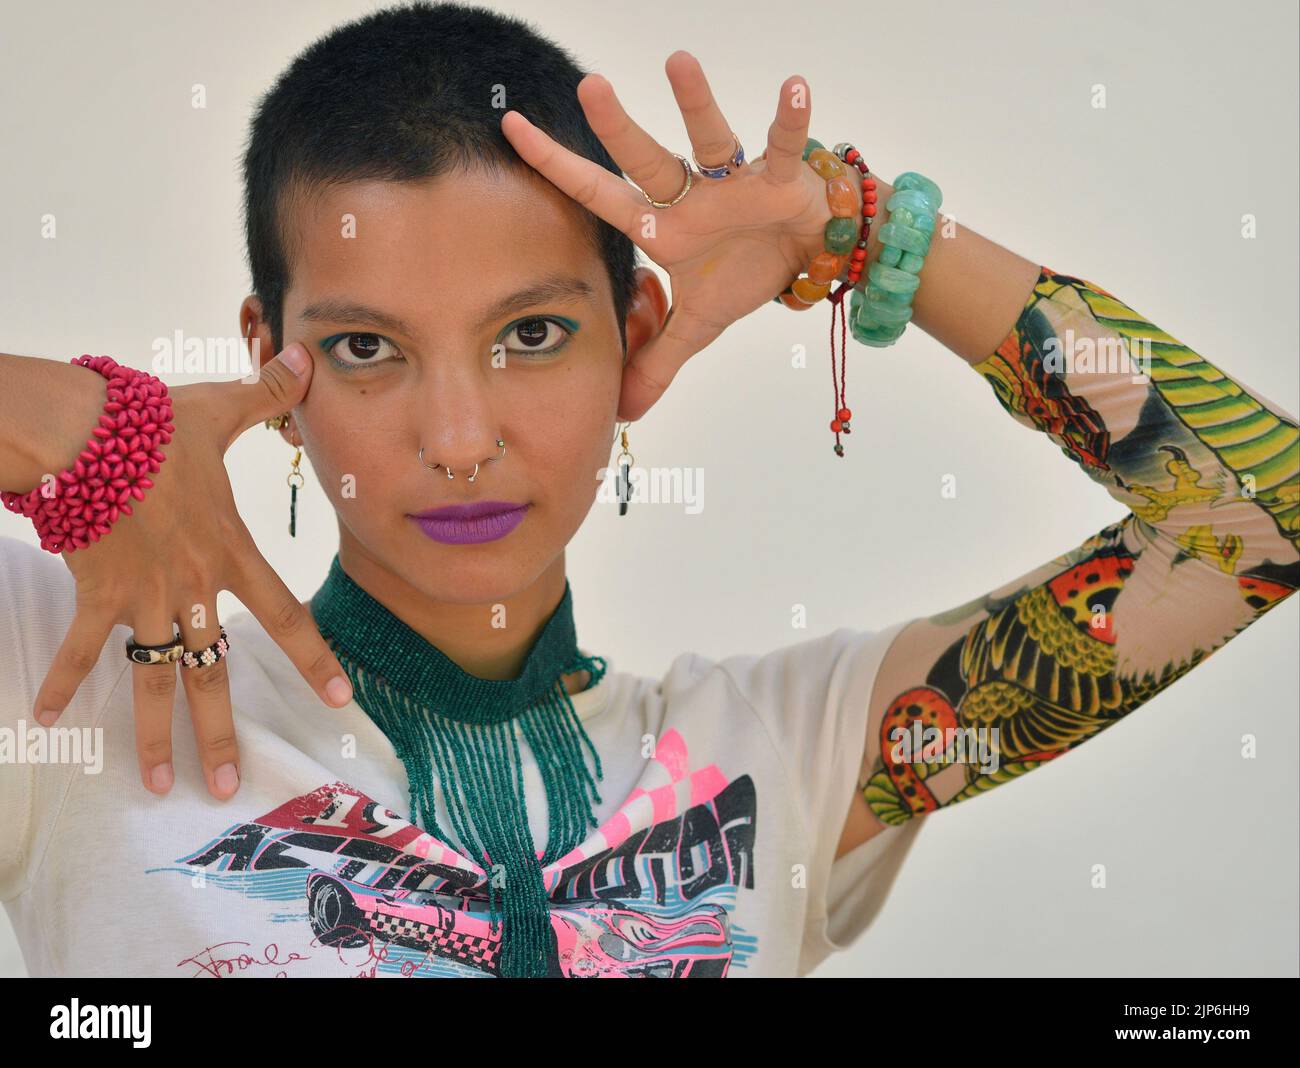 Junge attraktive schöne mexikanische weibliche Modell mit sehr kurzen Haaren trägt Tattoo Schutzärmel und Posen mit kreativen expressiven Handgesten. Stockfoto